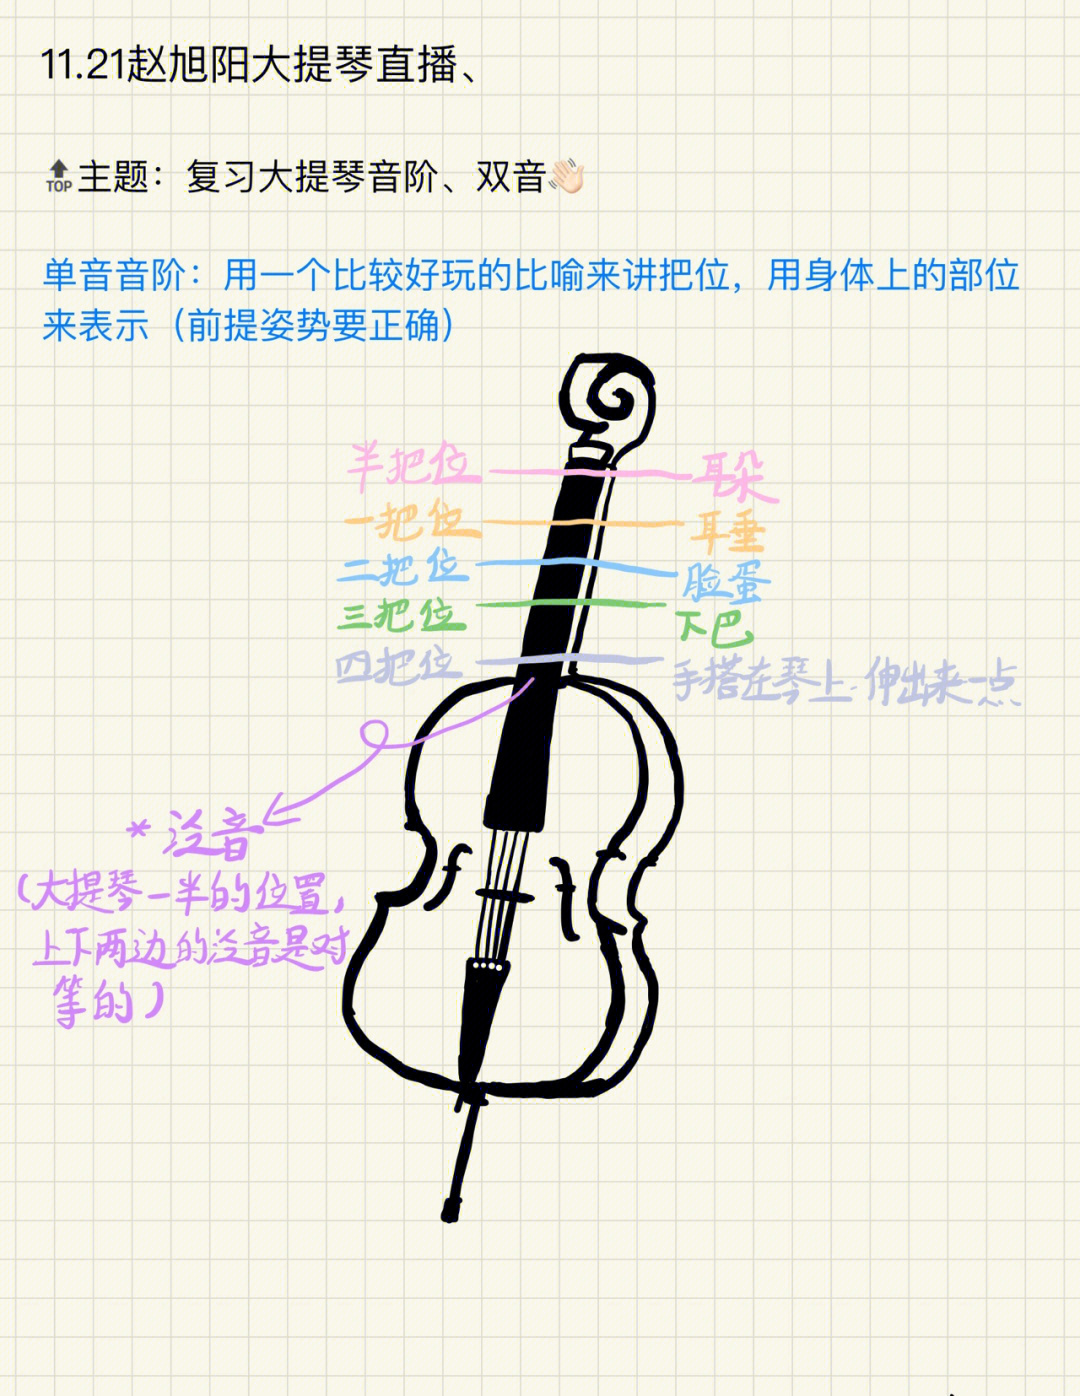 大提琴简谱指法对照表图片